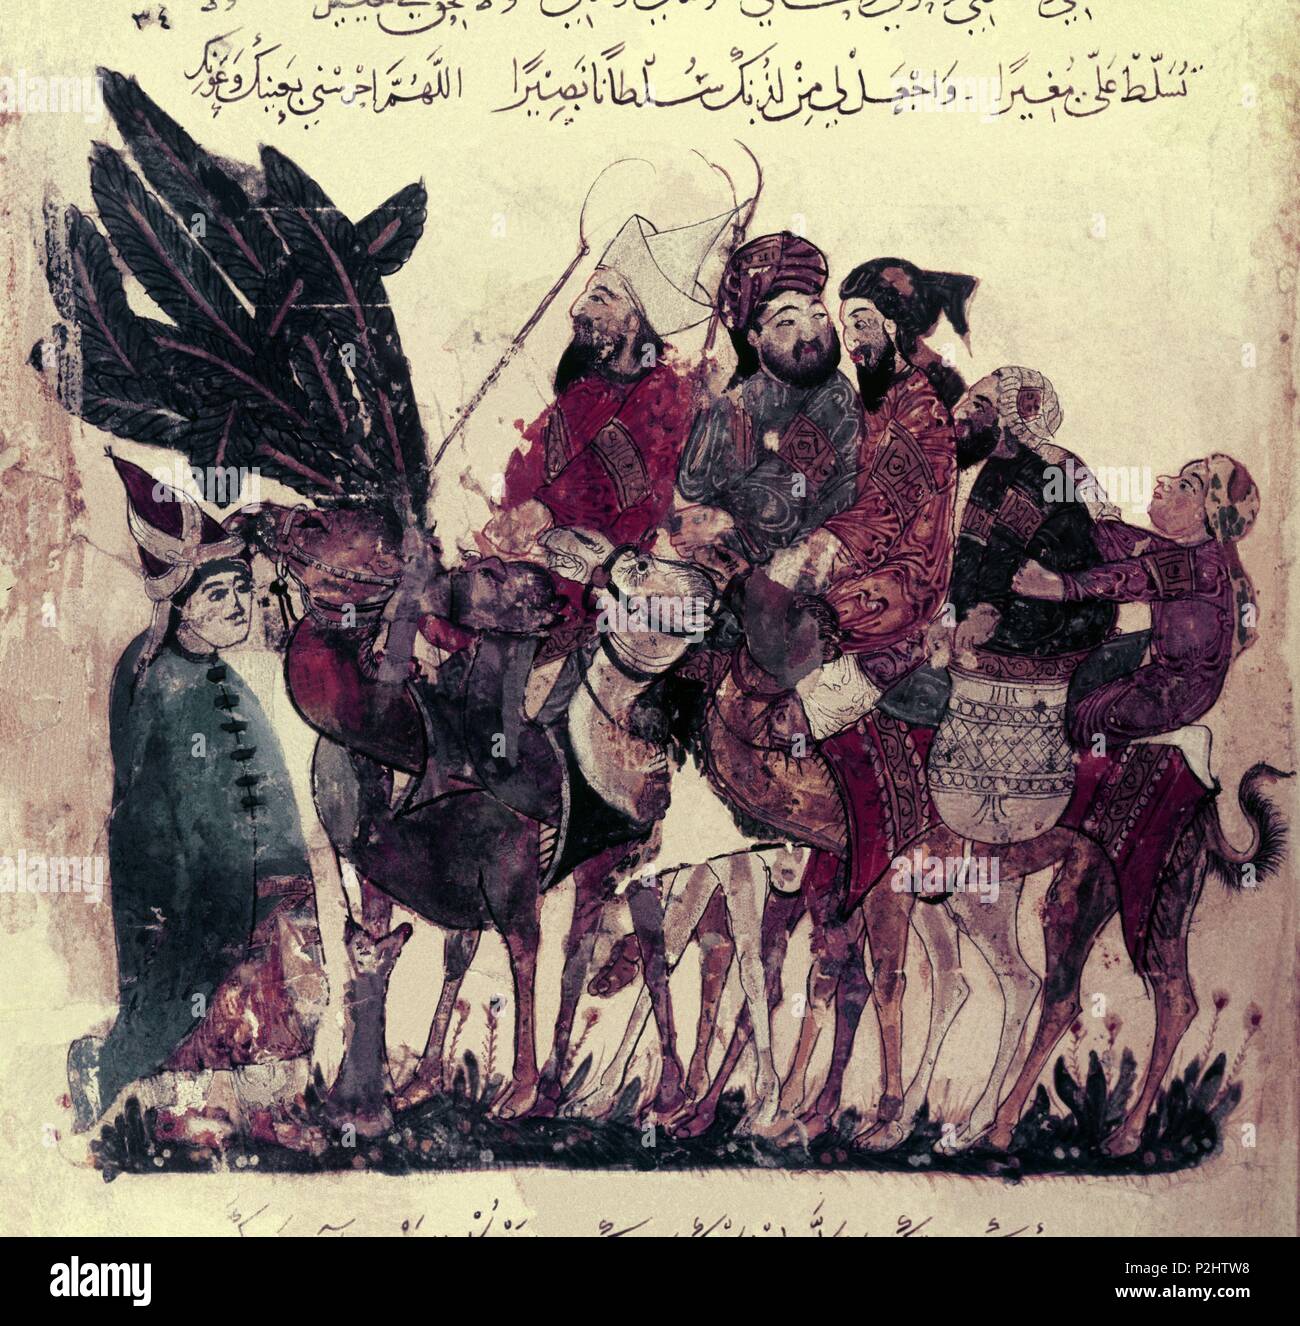 Storia Universale delle esplorazioni. William del atlante. Caravan di pellegrini. Autore: Yahya Mahmud ibn al-Wasiti (XIII sec.). Foto Stock